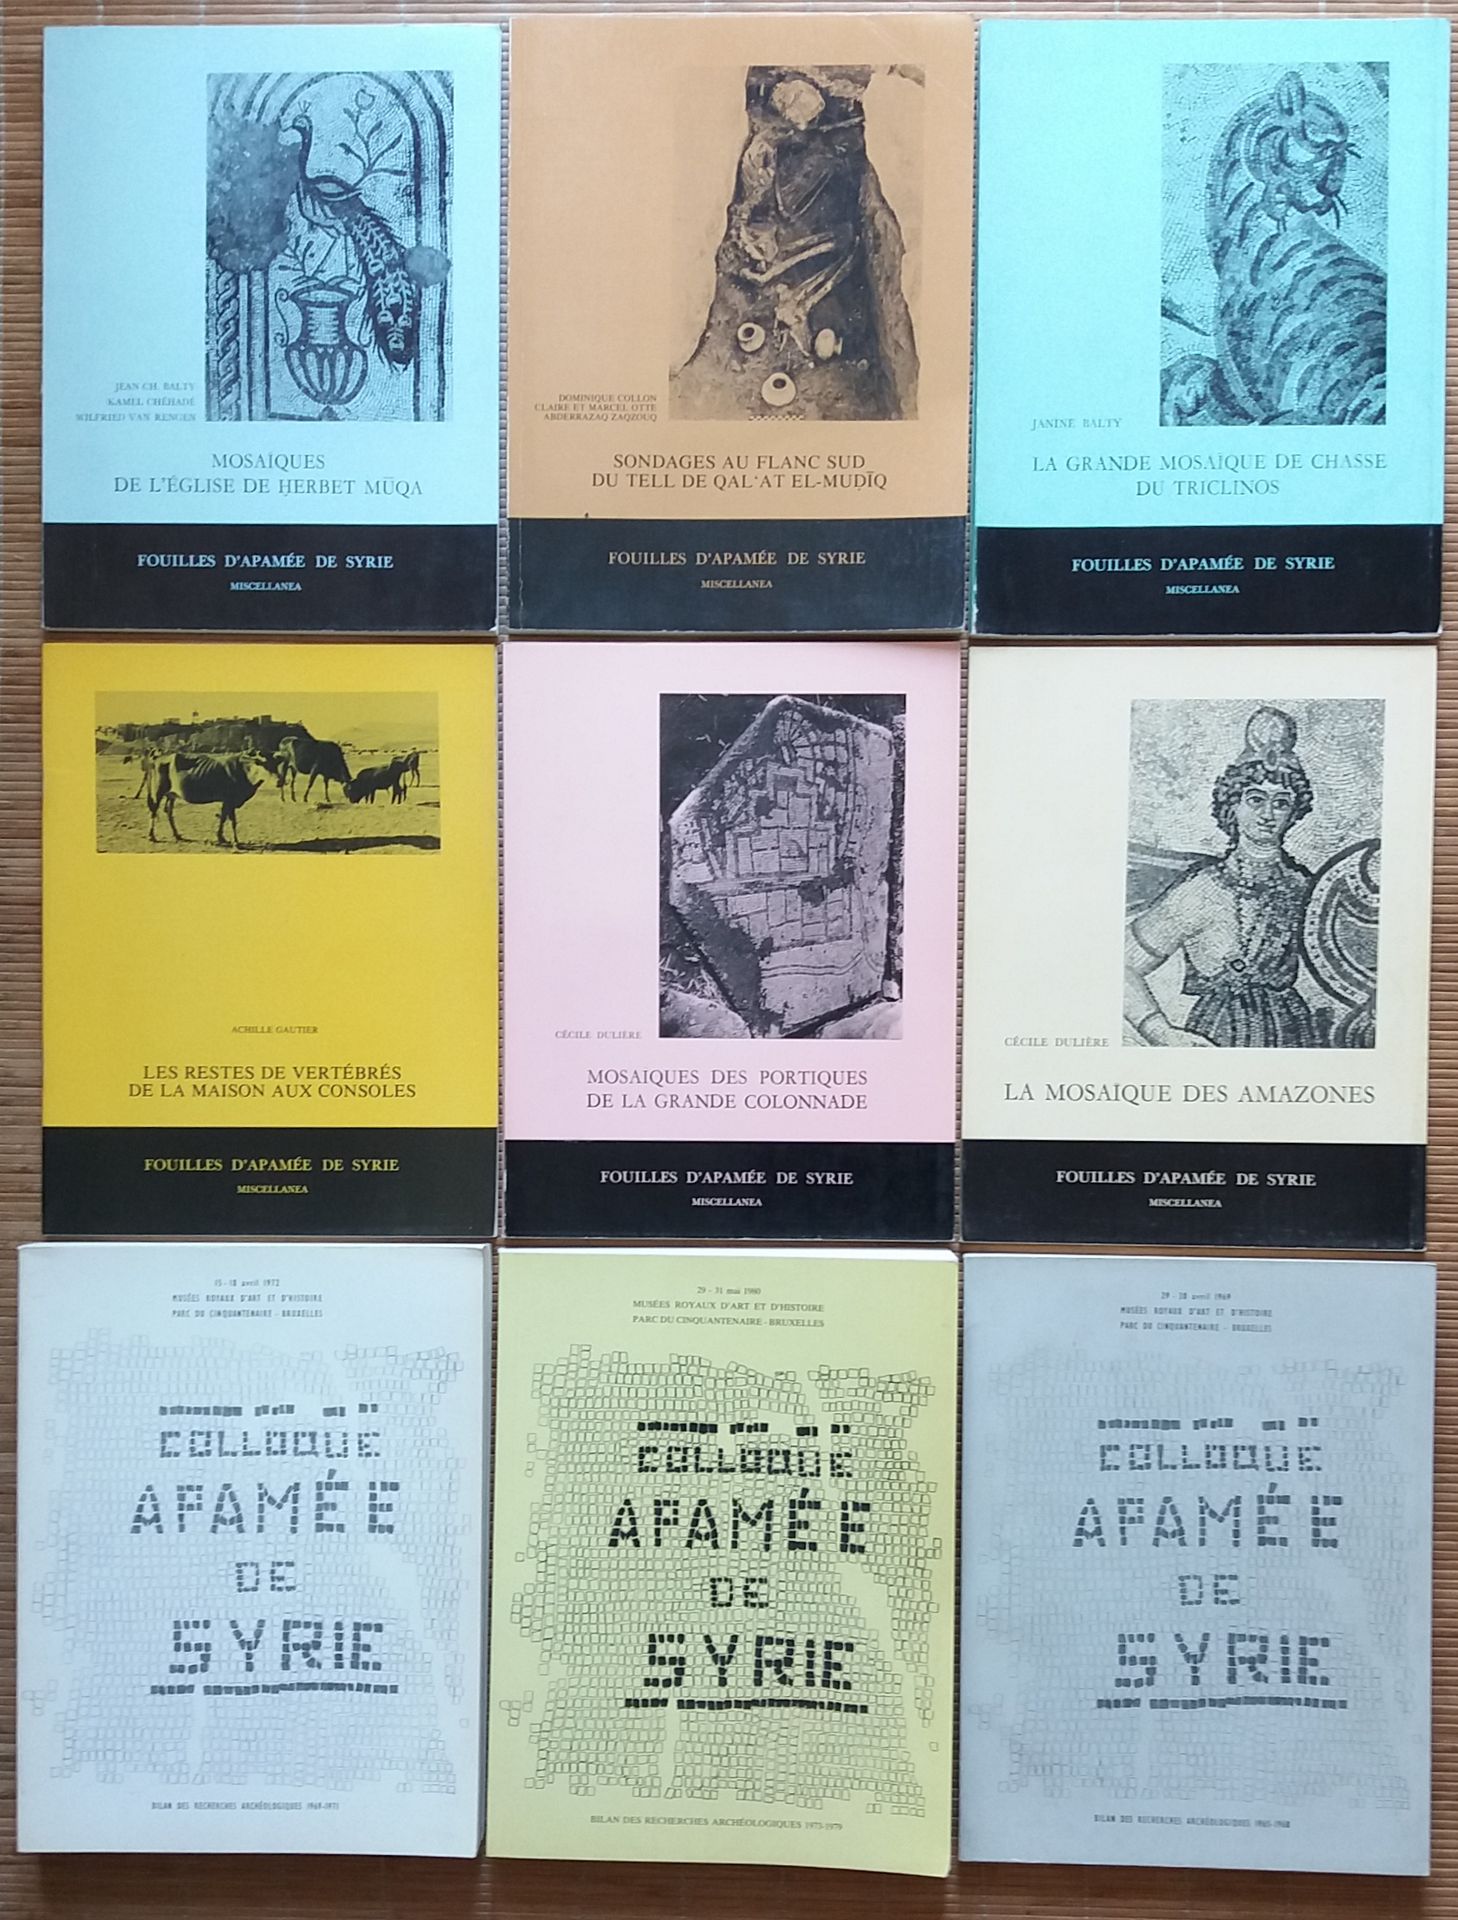 Null [ARCHÉOLOGIE - SYRIE]
9 ouvrages sur Apamée en Syrie.

*Apamée de Syrie. 
B&hellip;